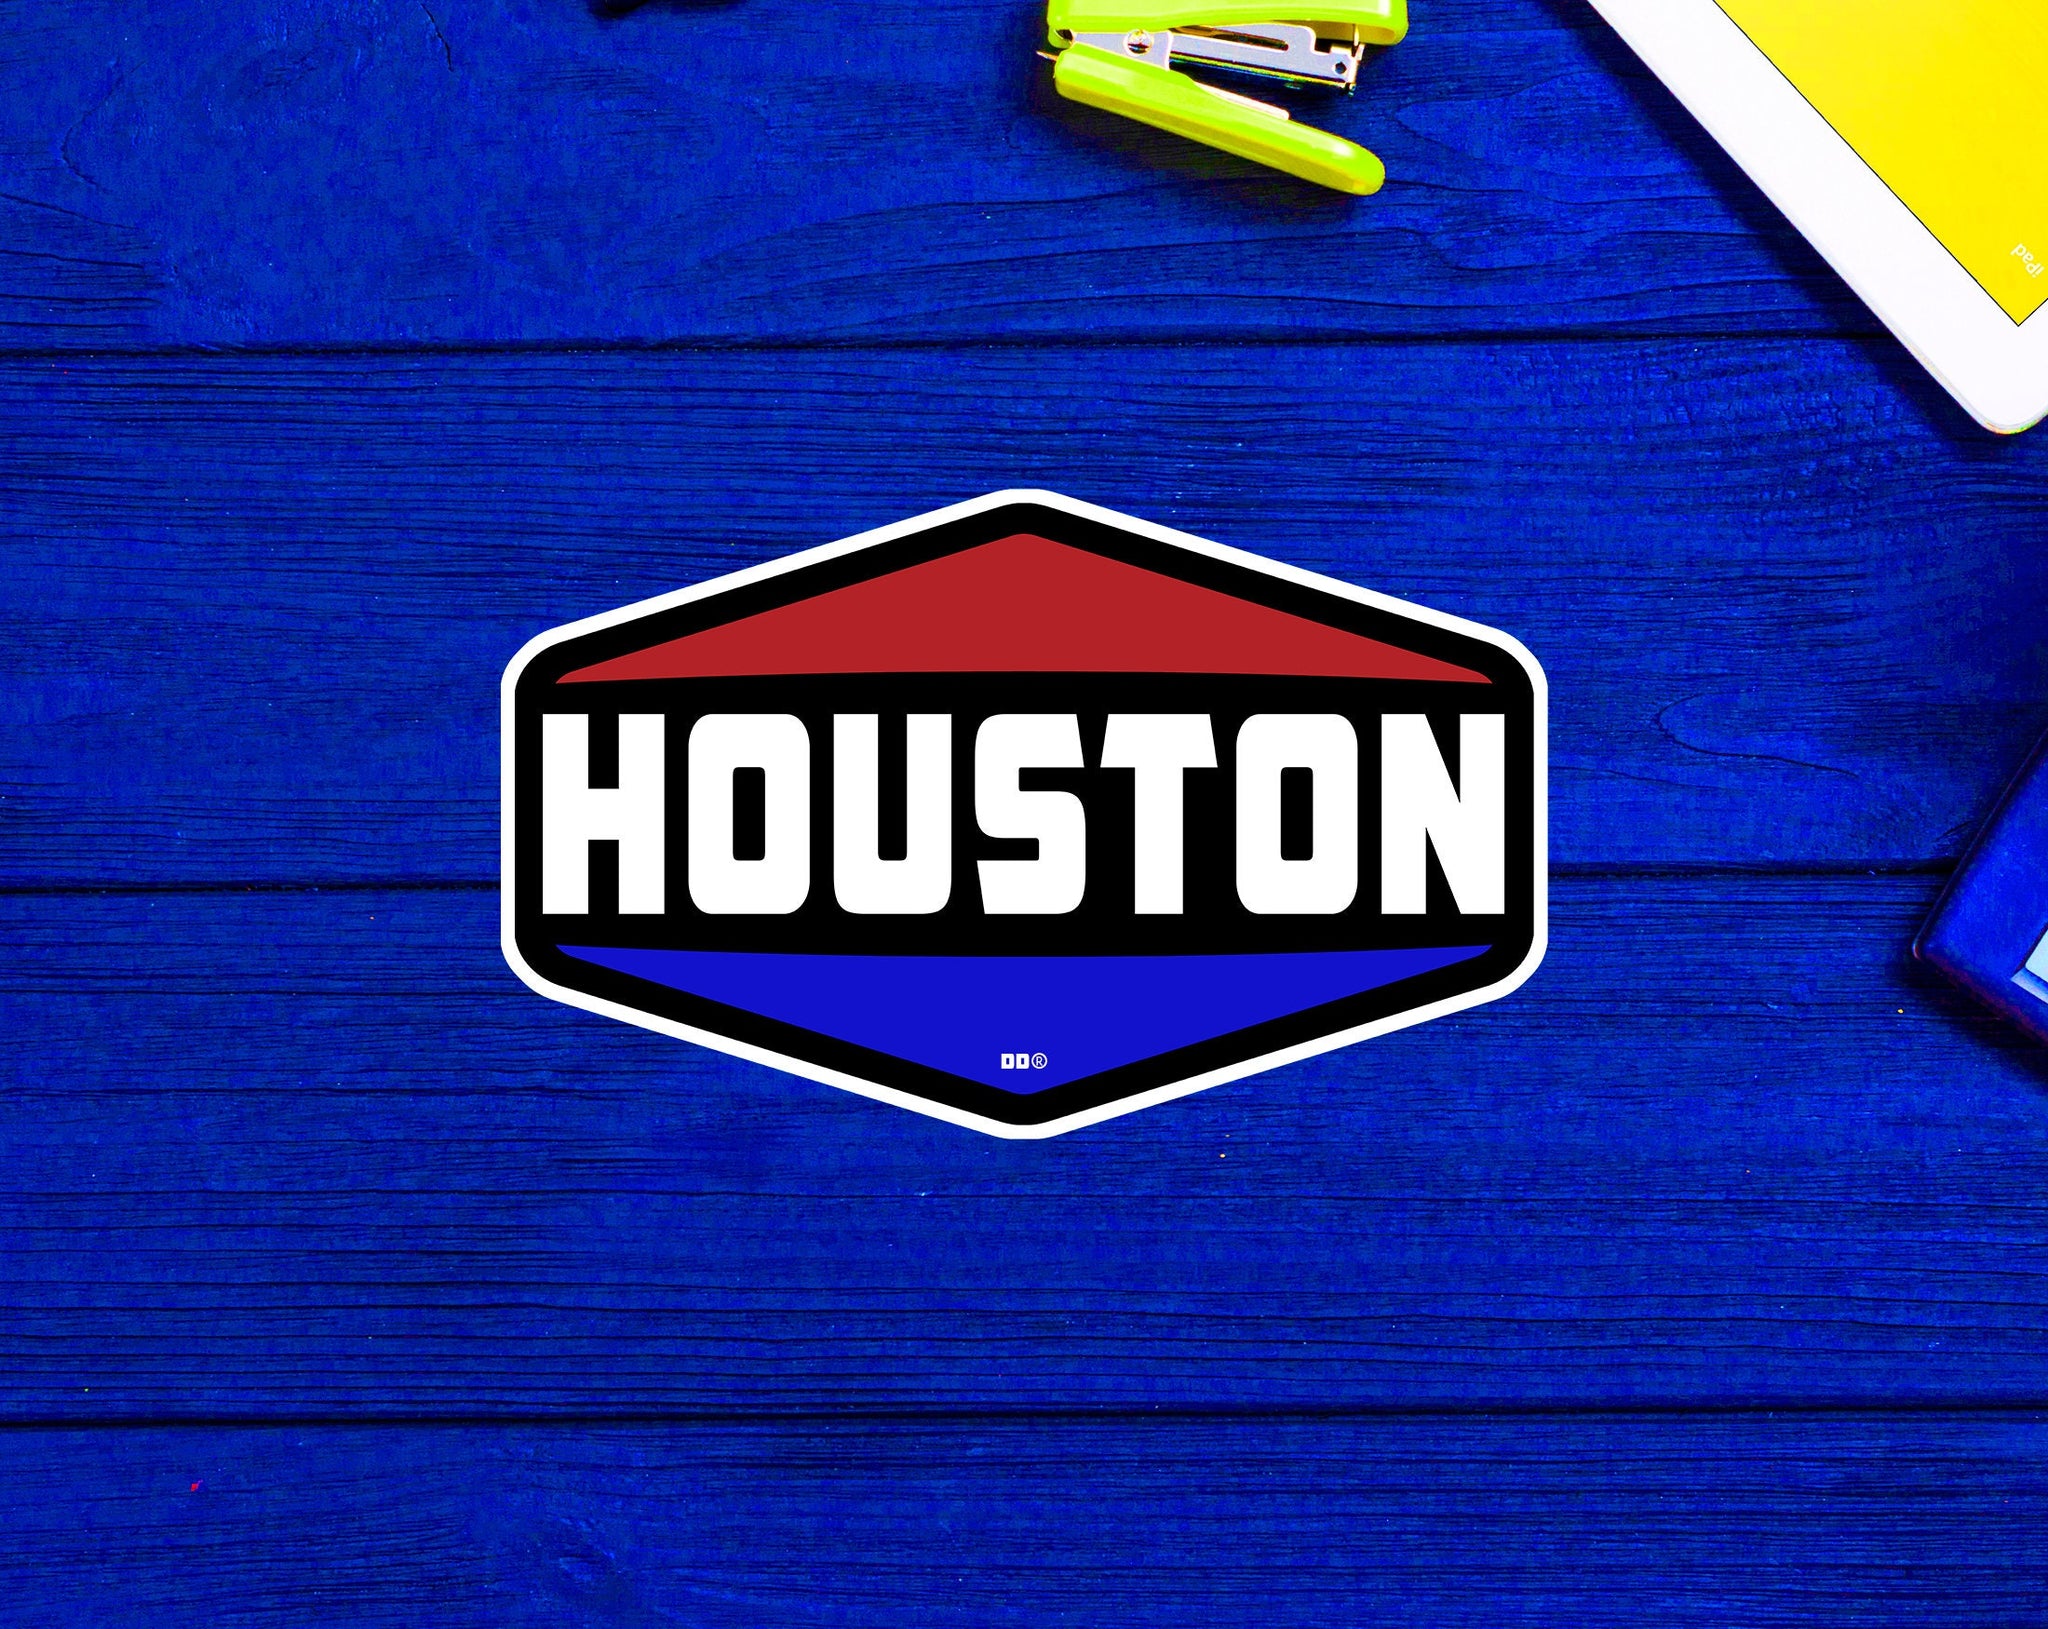 Houston Texas Decal 4" Sticker